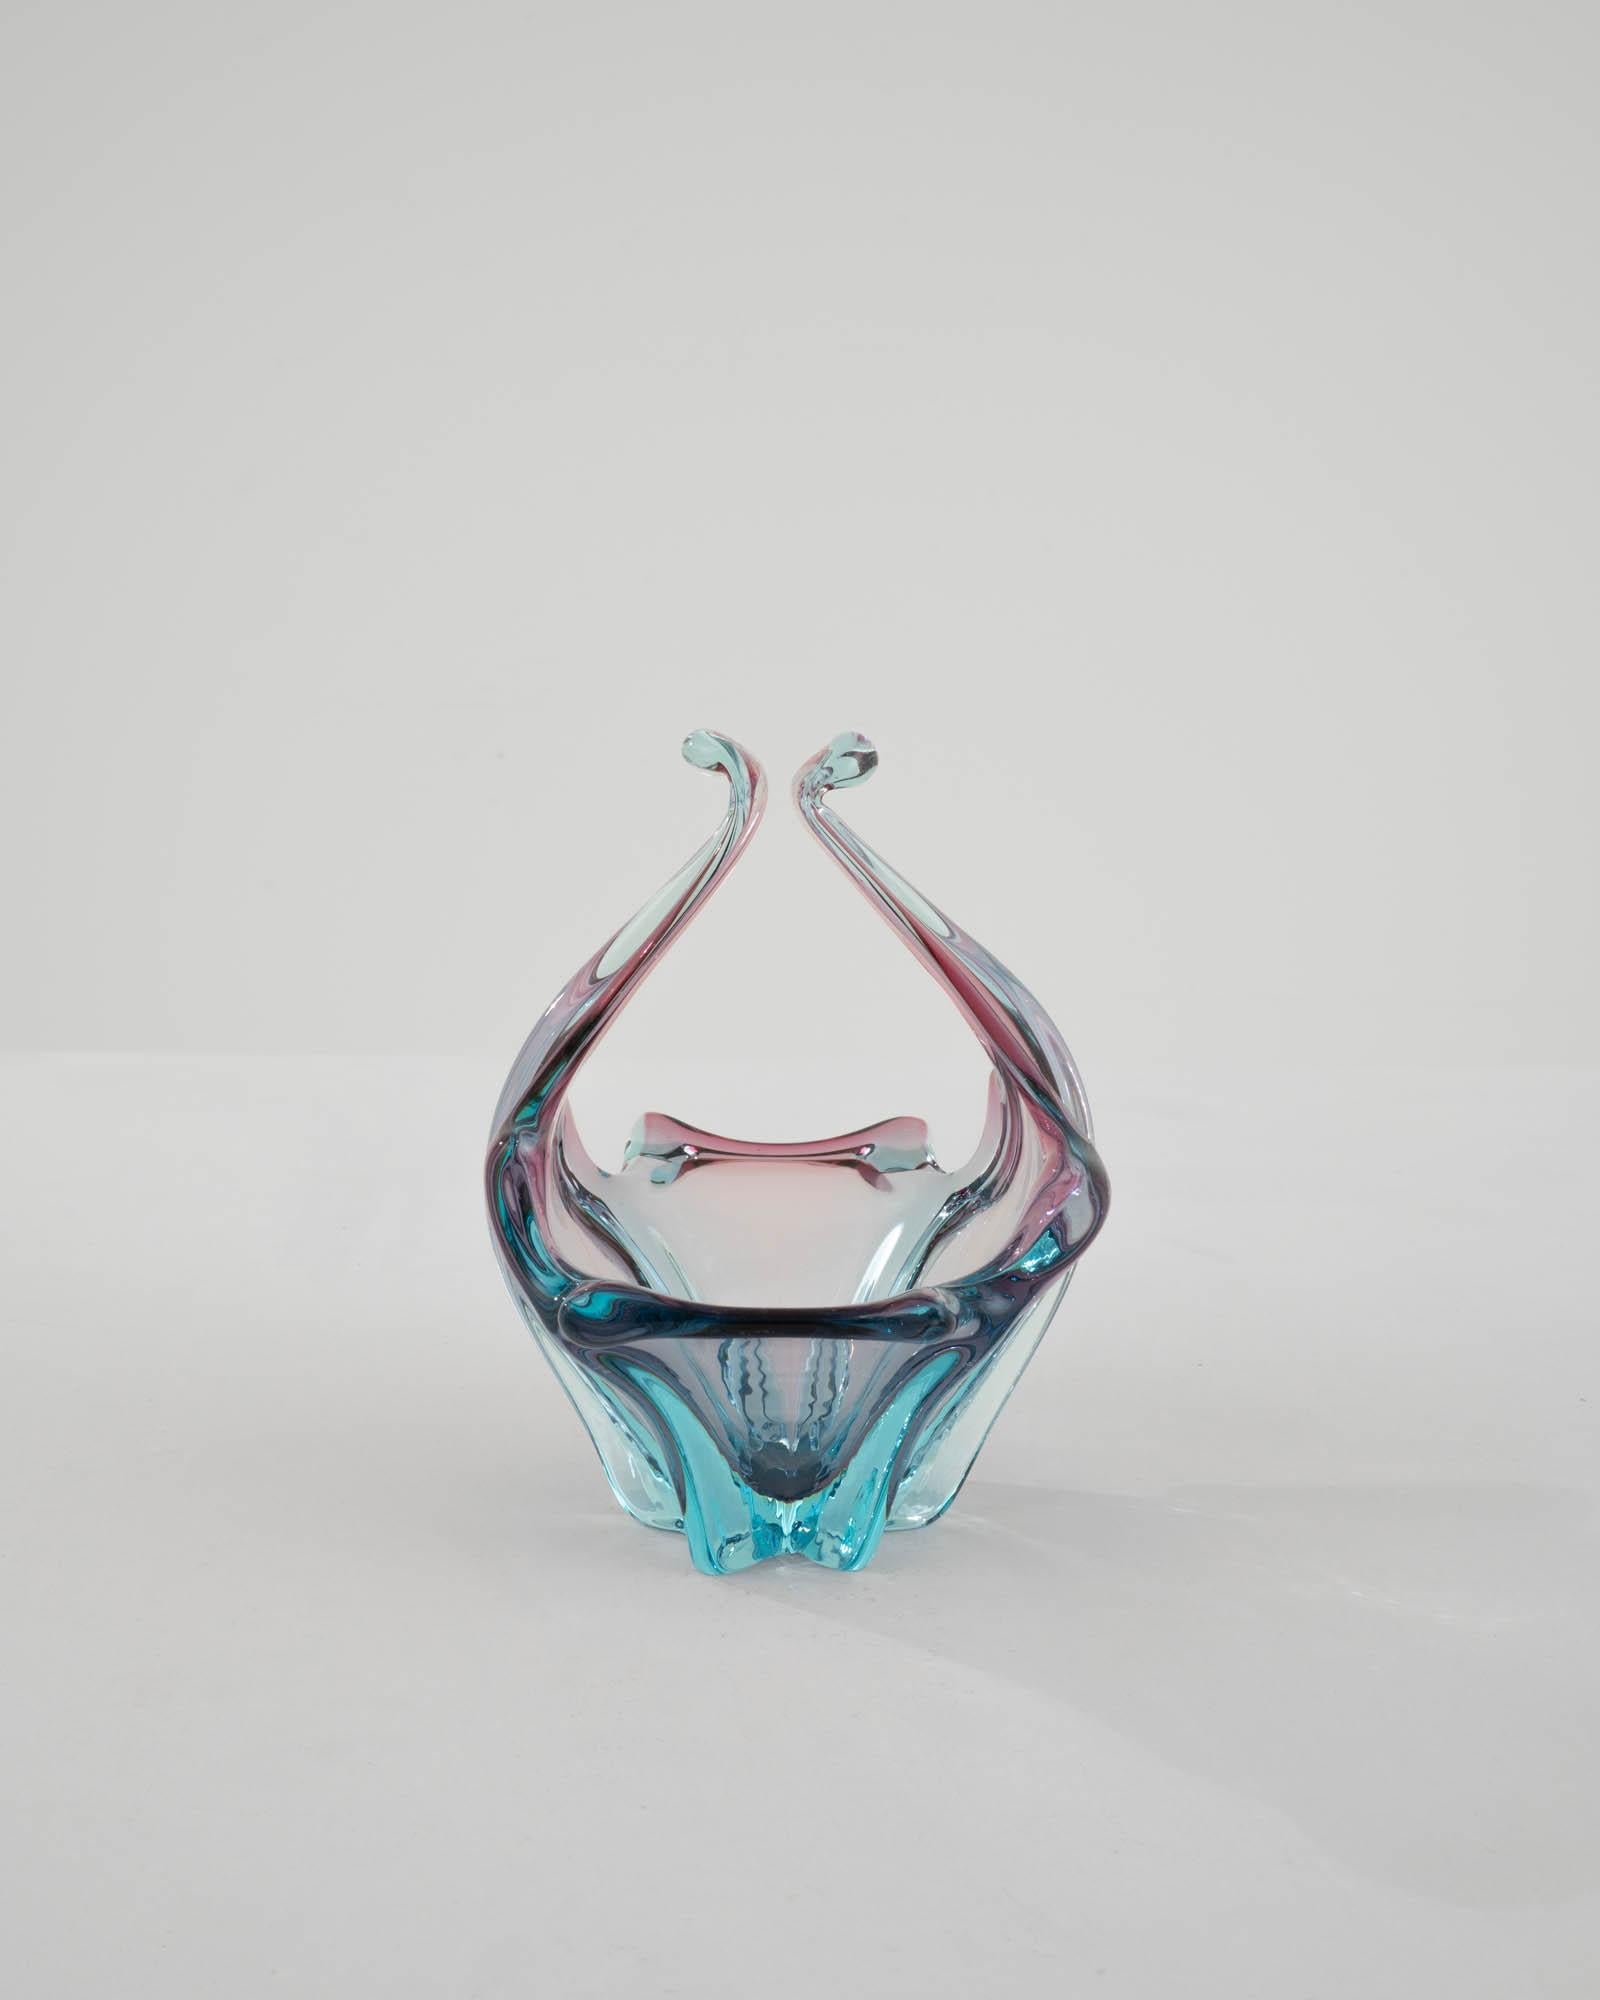 Les teintes vives et les lignes fluides du verre d'art soufflé créent un accent incomparable. Fabriqué en Italie vers 1960, le travail expressif du verre forme une silhouette audacieuse. Organique et abstrait, il rappelle une goutte d'eau capturée